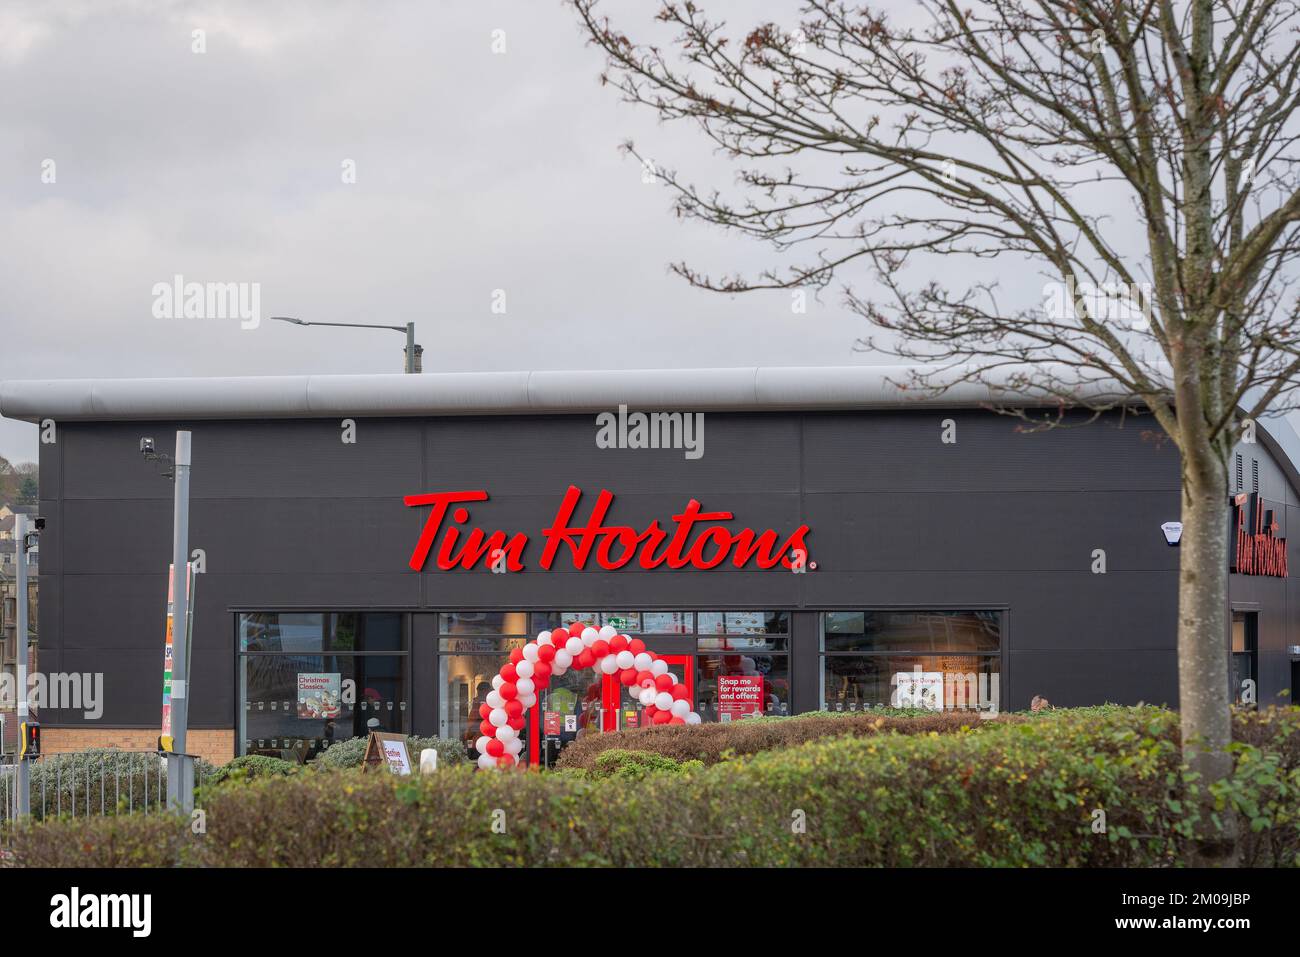 Burnley Lancashire. Pris le 5 décembre 2022. Le nouveau bâtiment Tim Hortons. Arche rouge et blanche sur l'ouverture du nouveau bâtiment. Banque D'Images